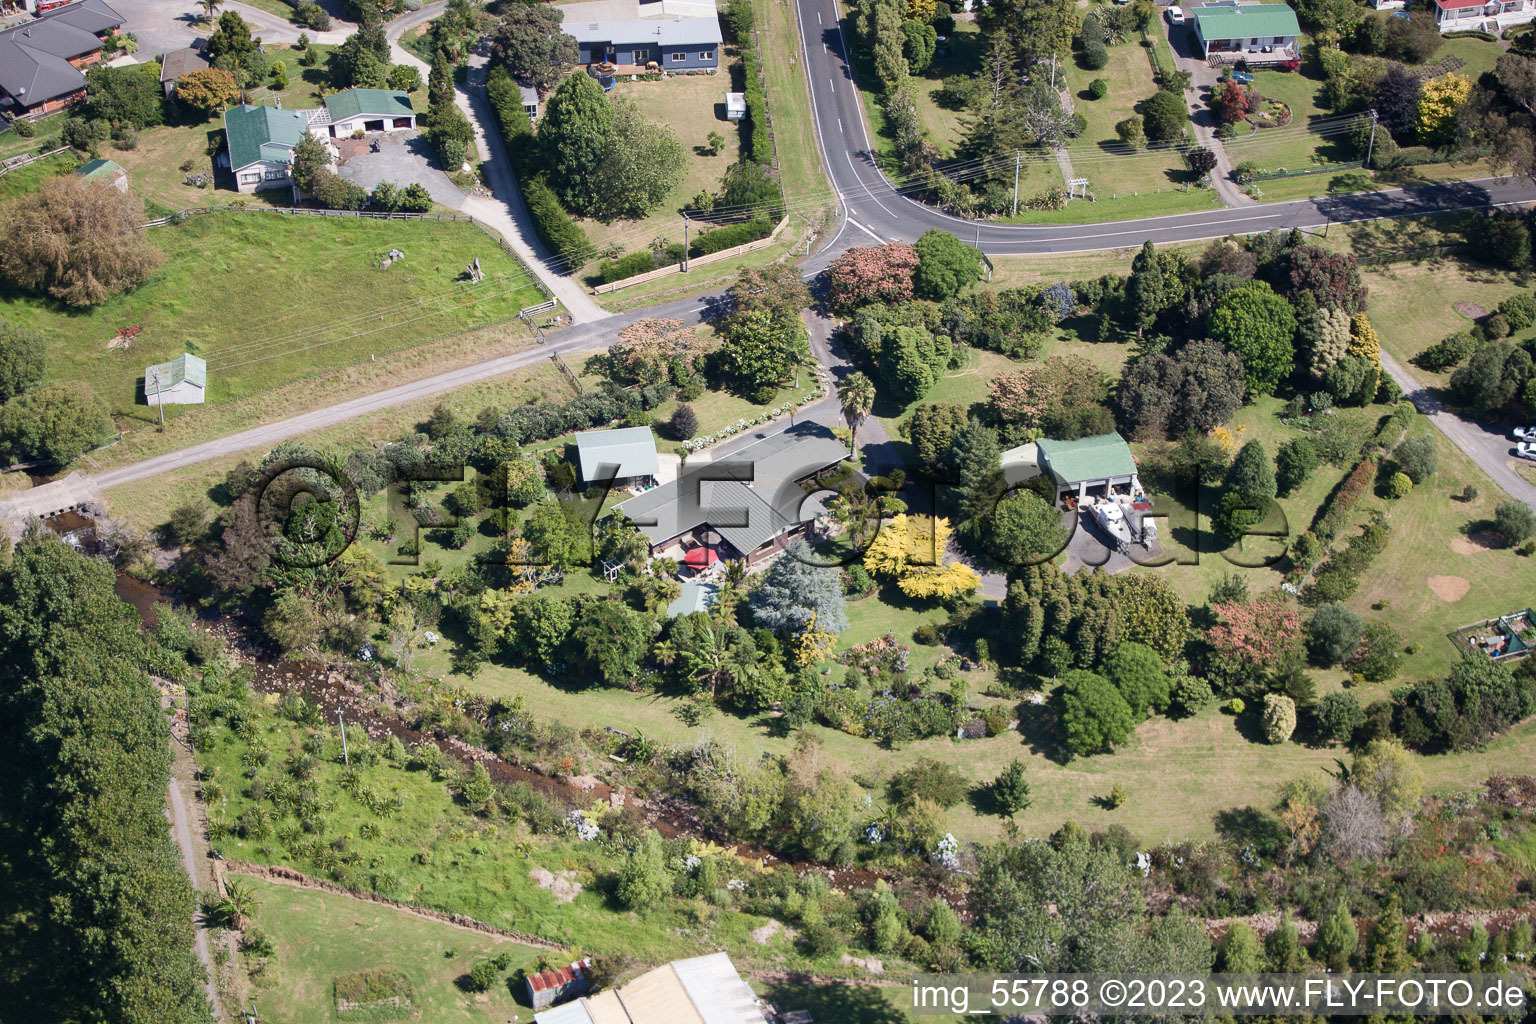 Coromandel dans le département Waïkato, Nouvelle-Zélande vue d'en haut